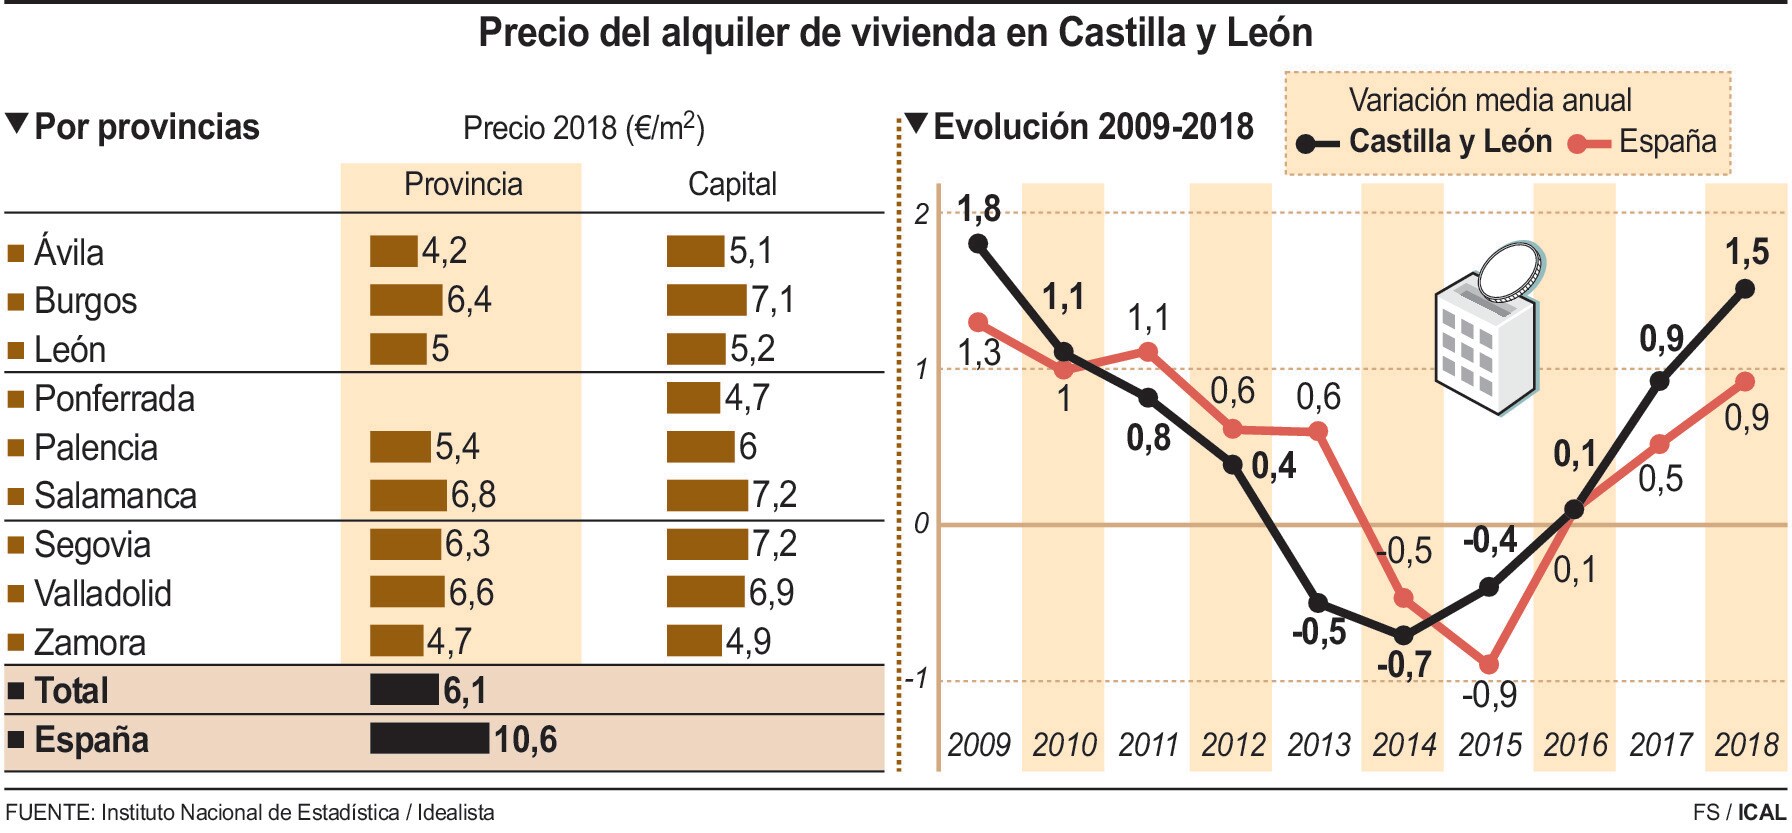 Precio del alquiler de vivienda en Castilla y León